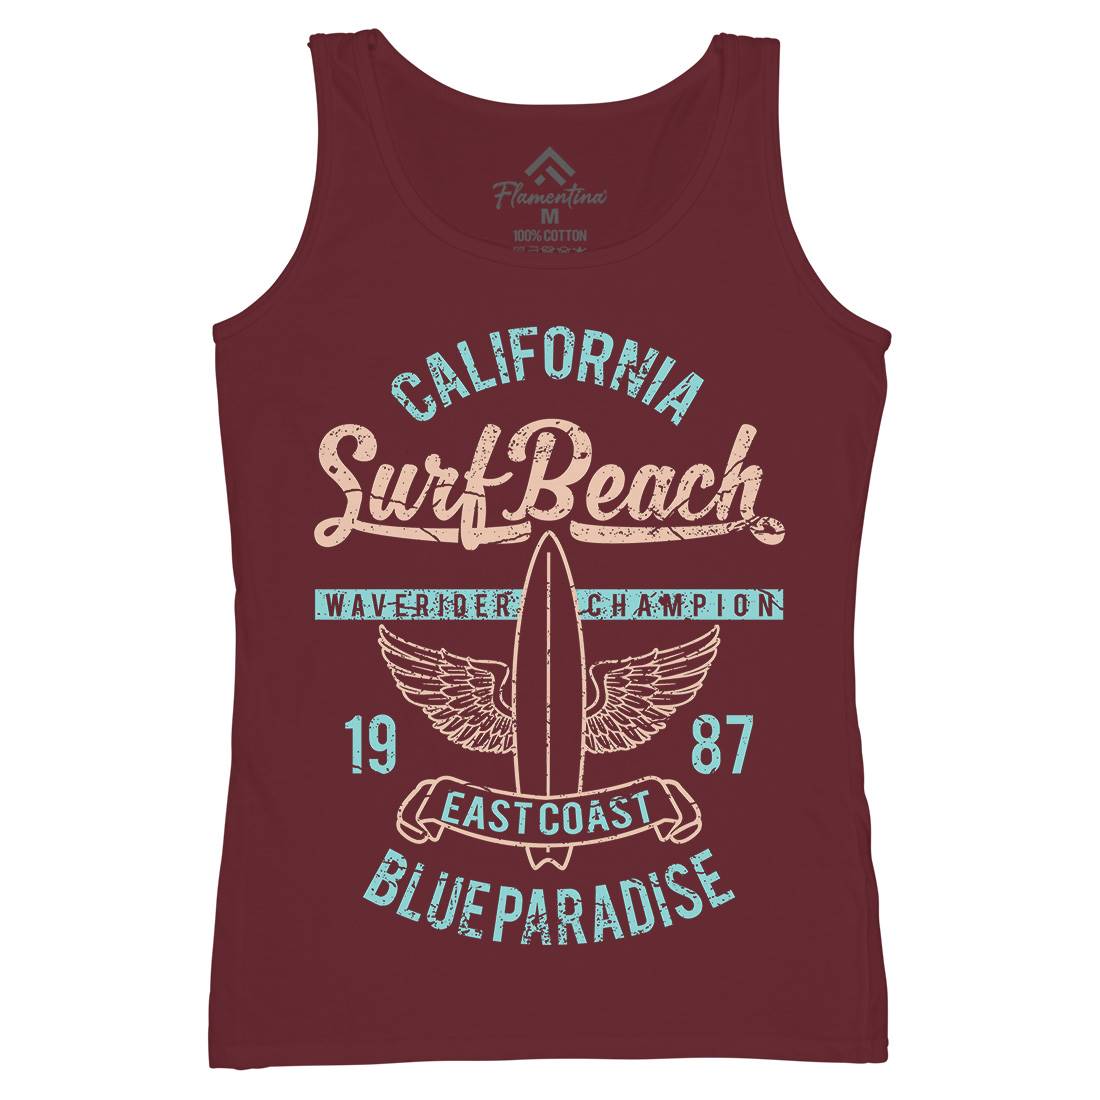 Beach Womens Organic Tank Top Vest Surf A168